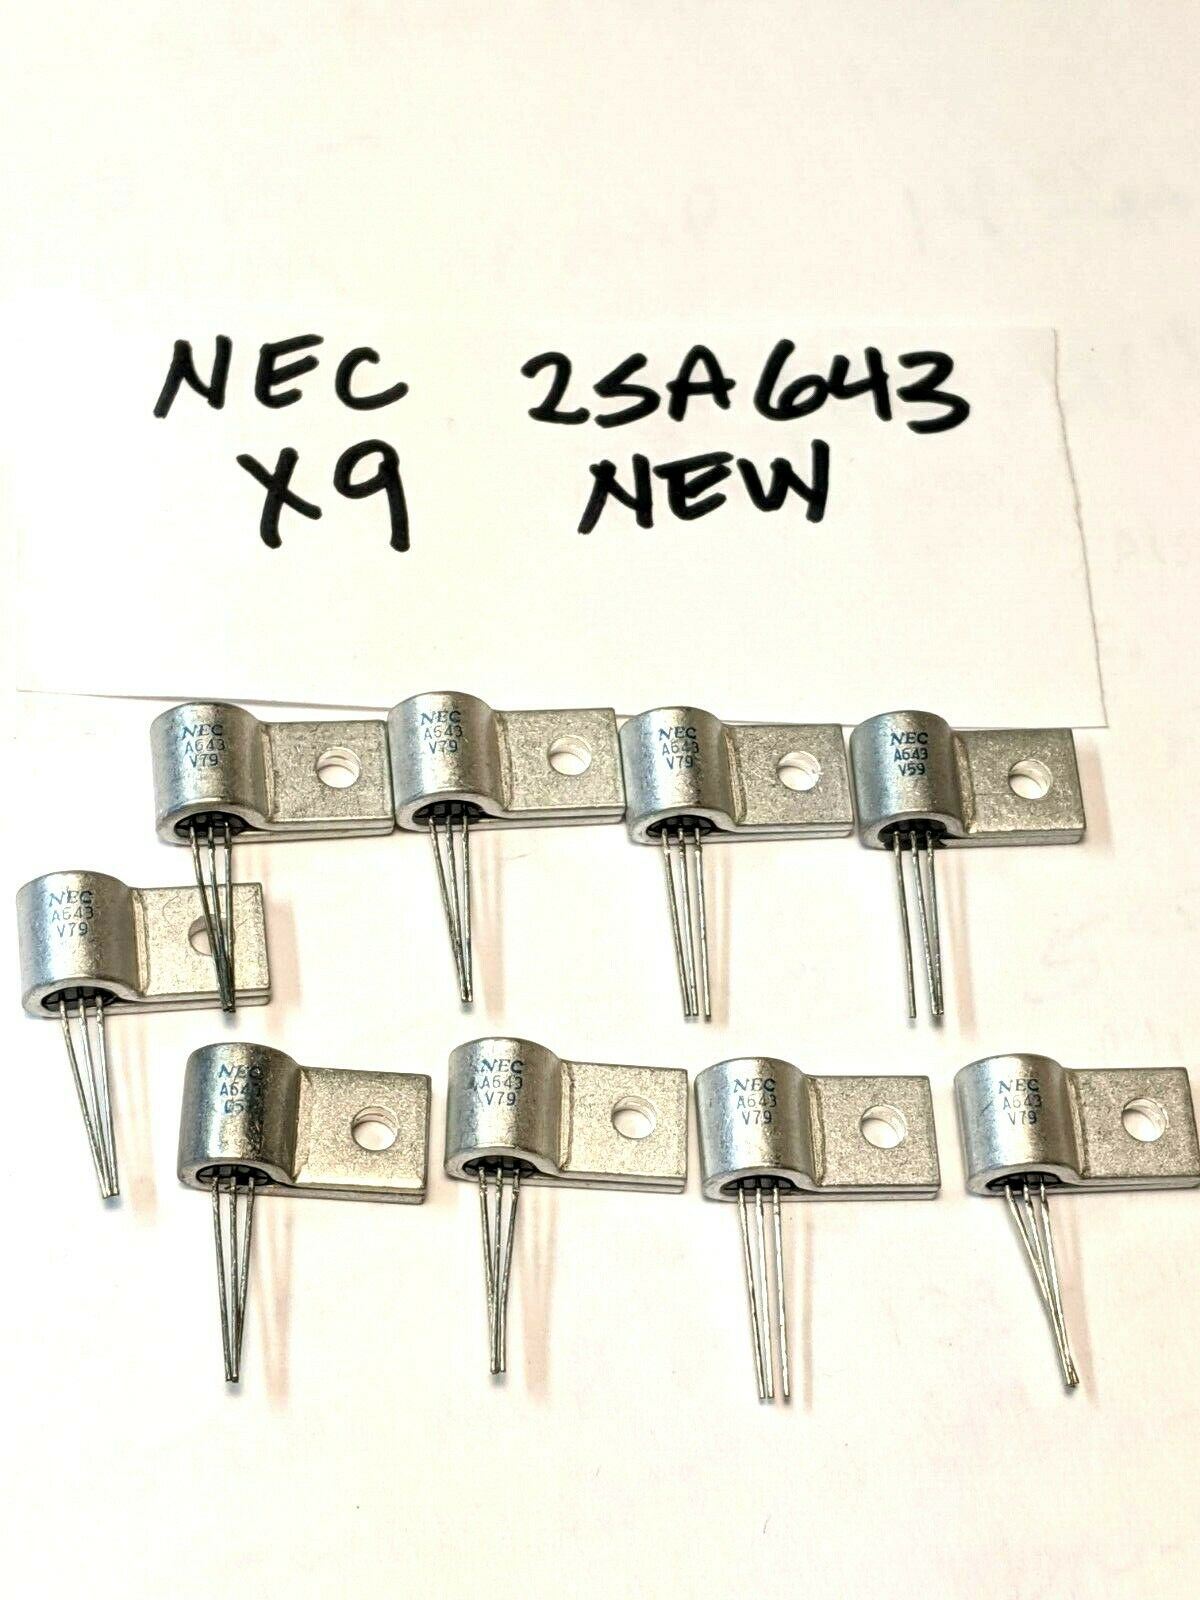 9 Germanium Transistors 2SA643 NEC